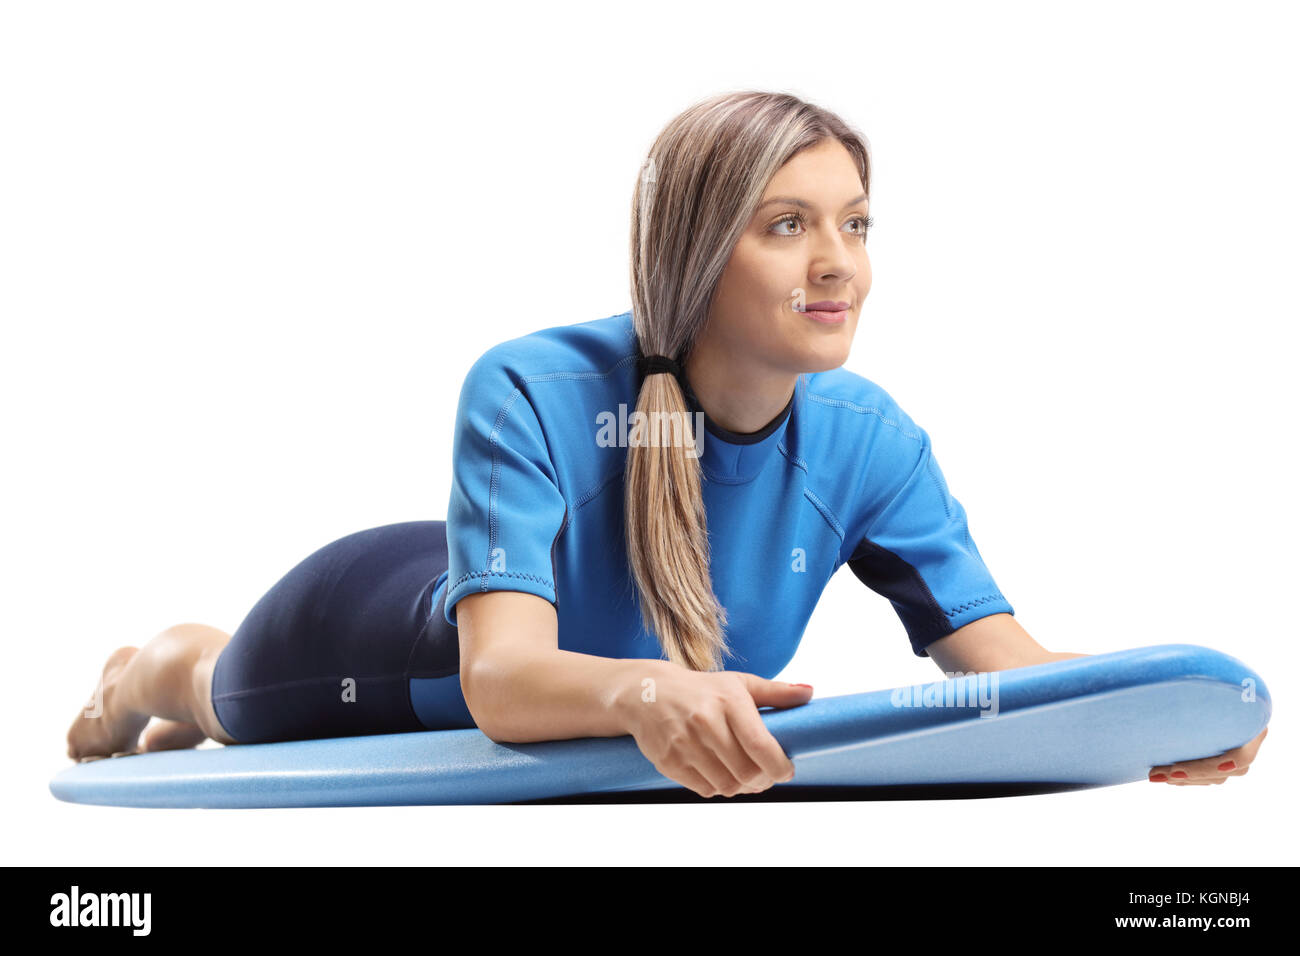 Junge Frau in einem Neoprenanzug liegen auf einem Surfboard auf weißem Hintergrund Stockfoto